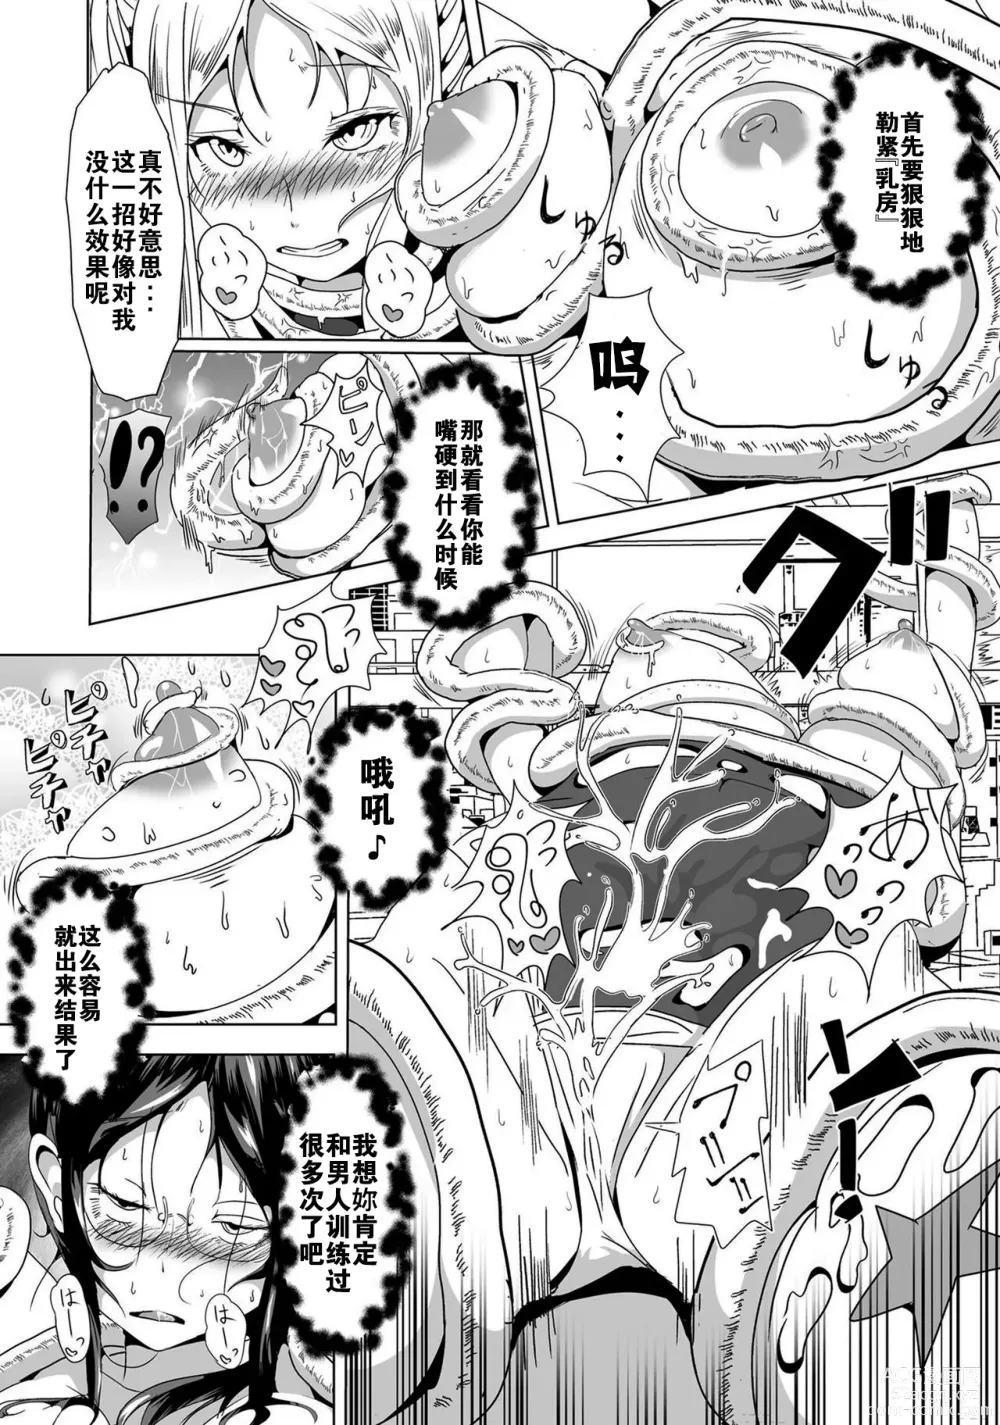 Page 8 of manga Moto